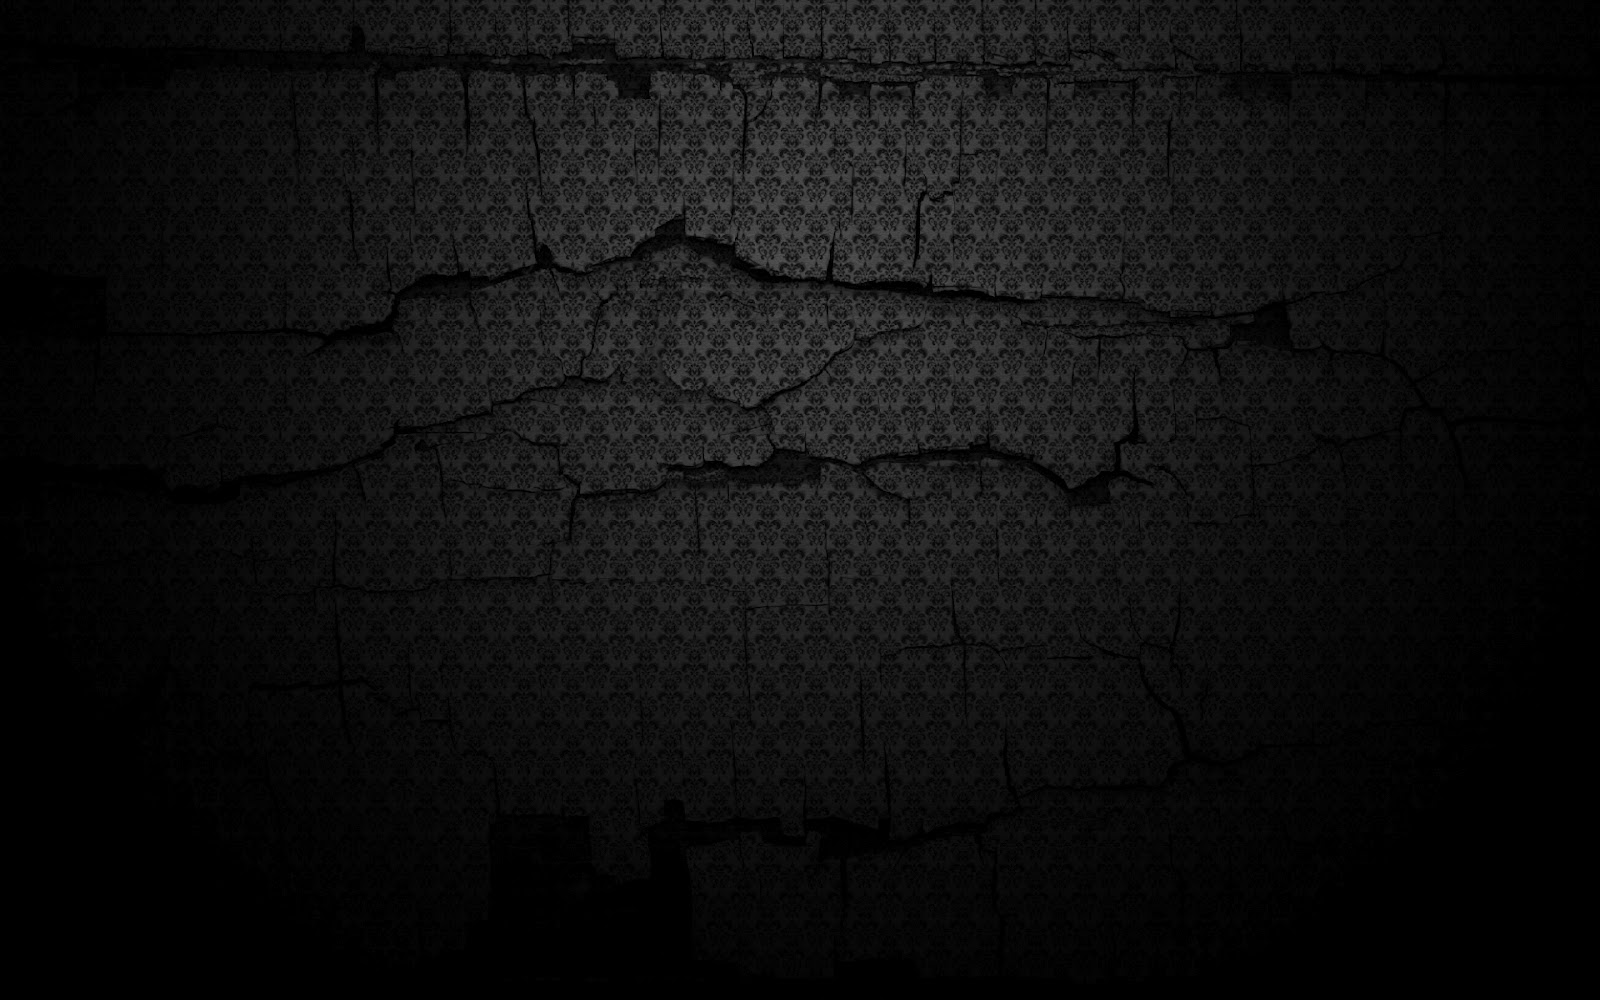 72+] Dark Hd Wallpapers - WallpaperSafari